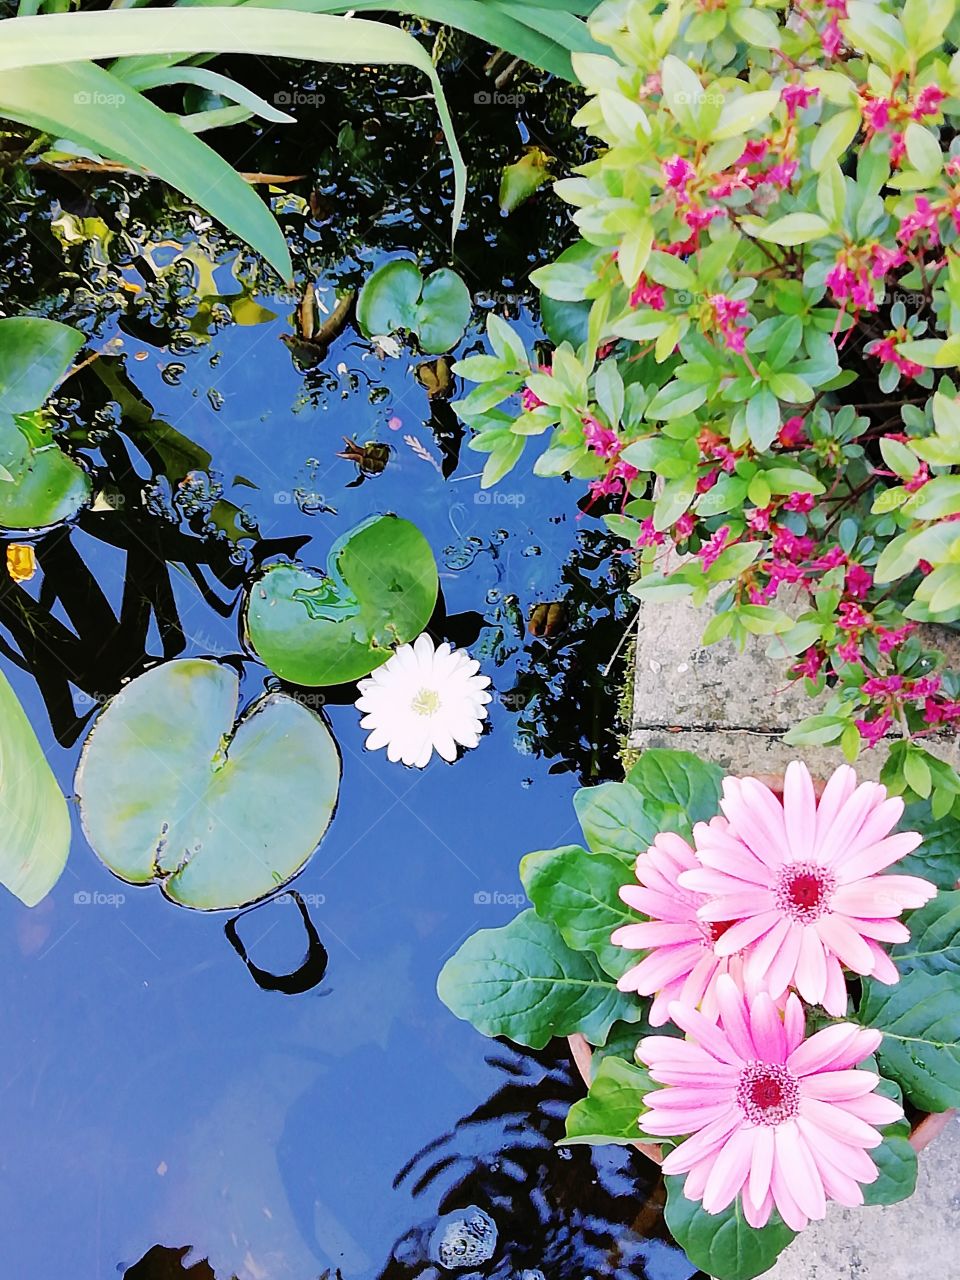 Flowering garden pond